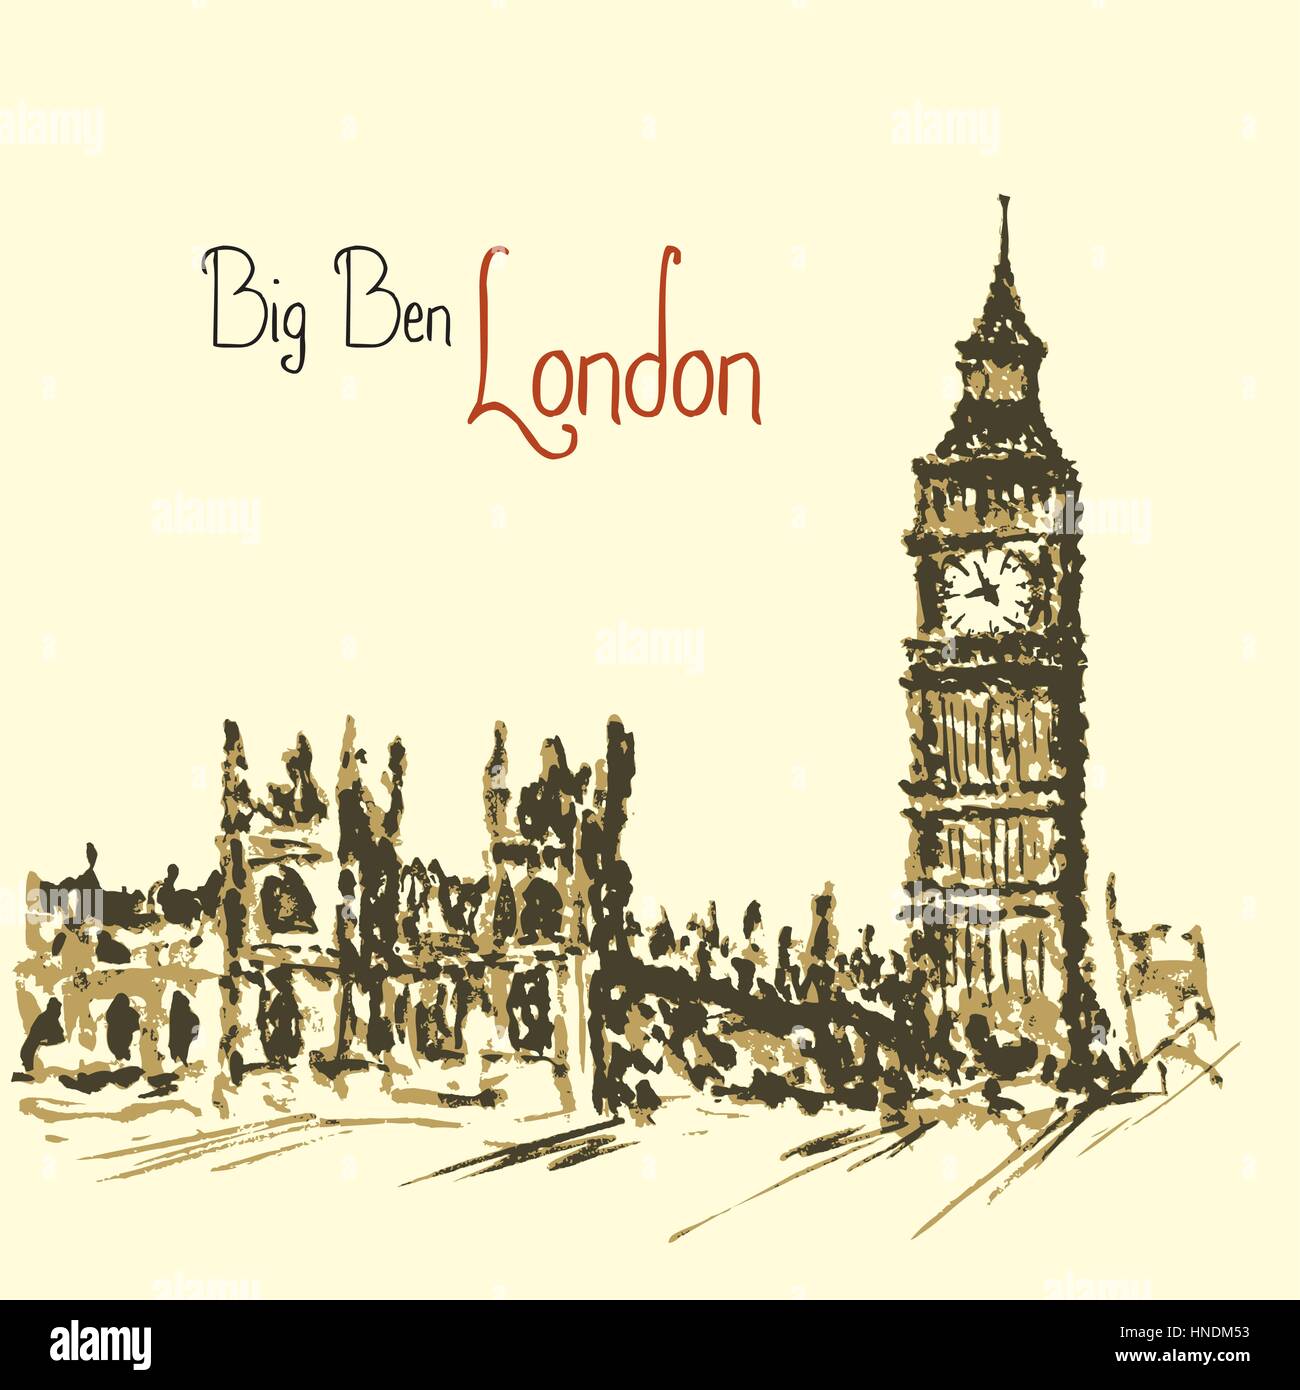 Tour de l'horloge de l'aquarelle du Palais de Westminster, Big Ben, London England UK Illustration de Vecteur